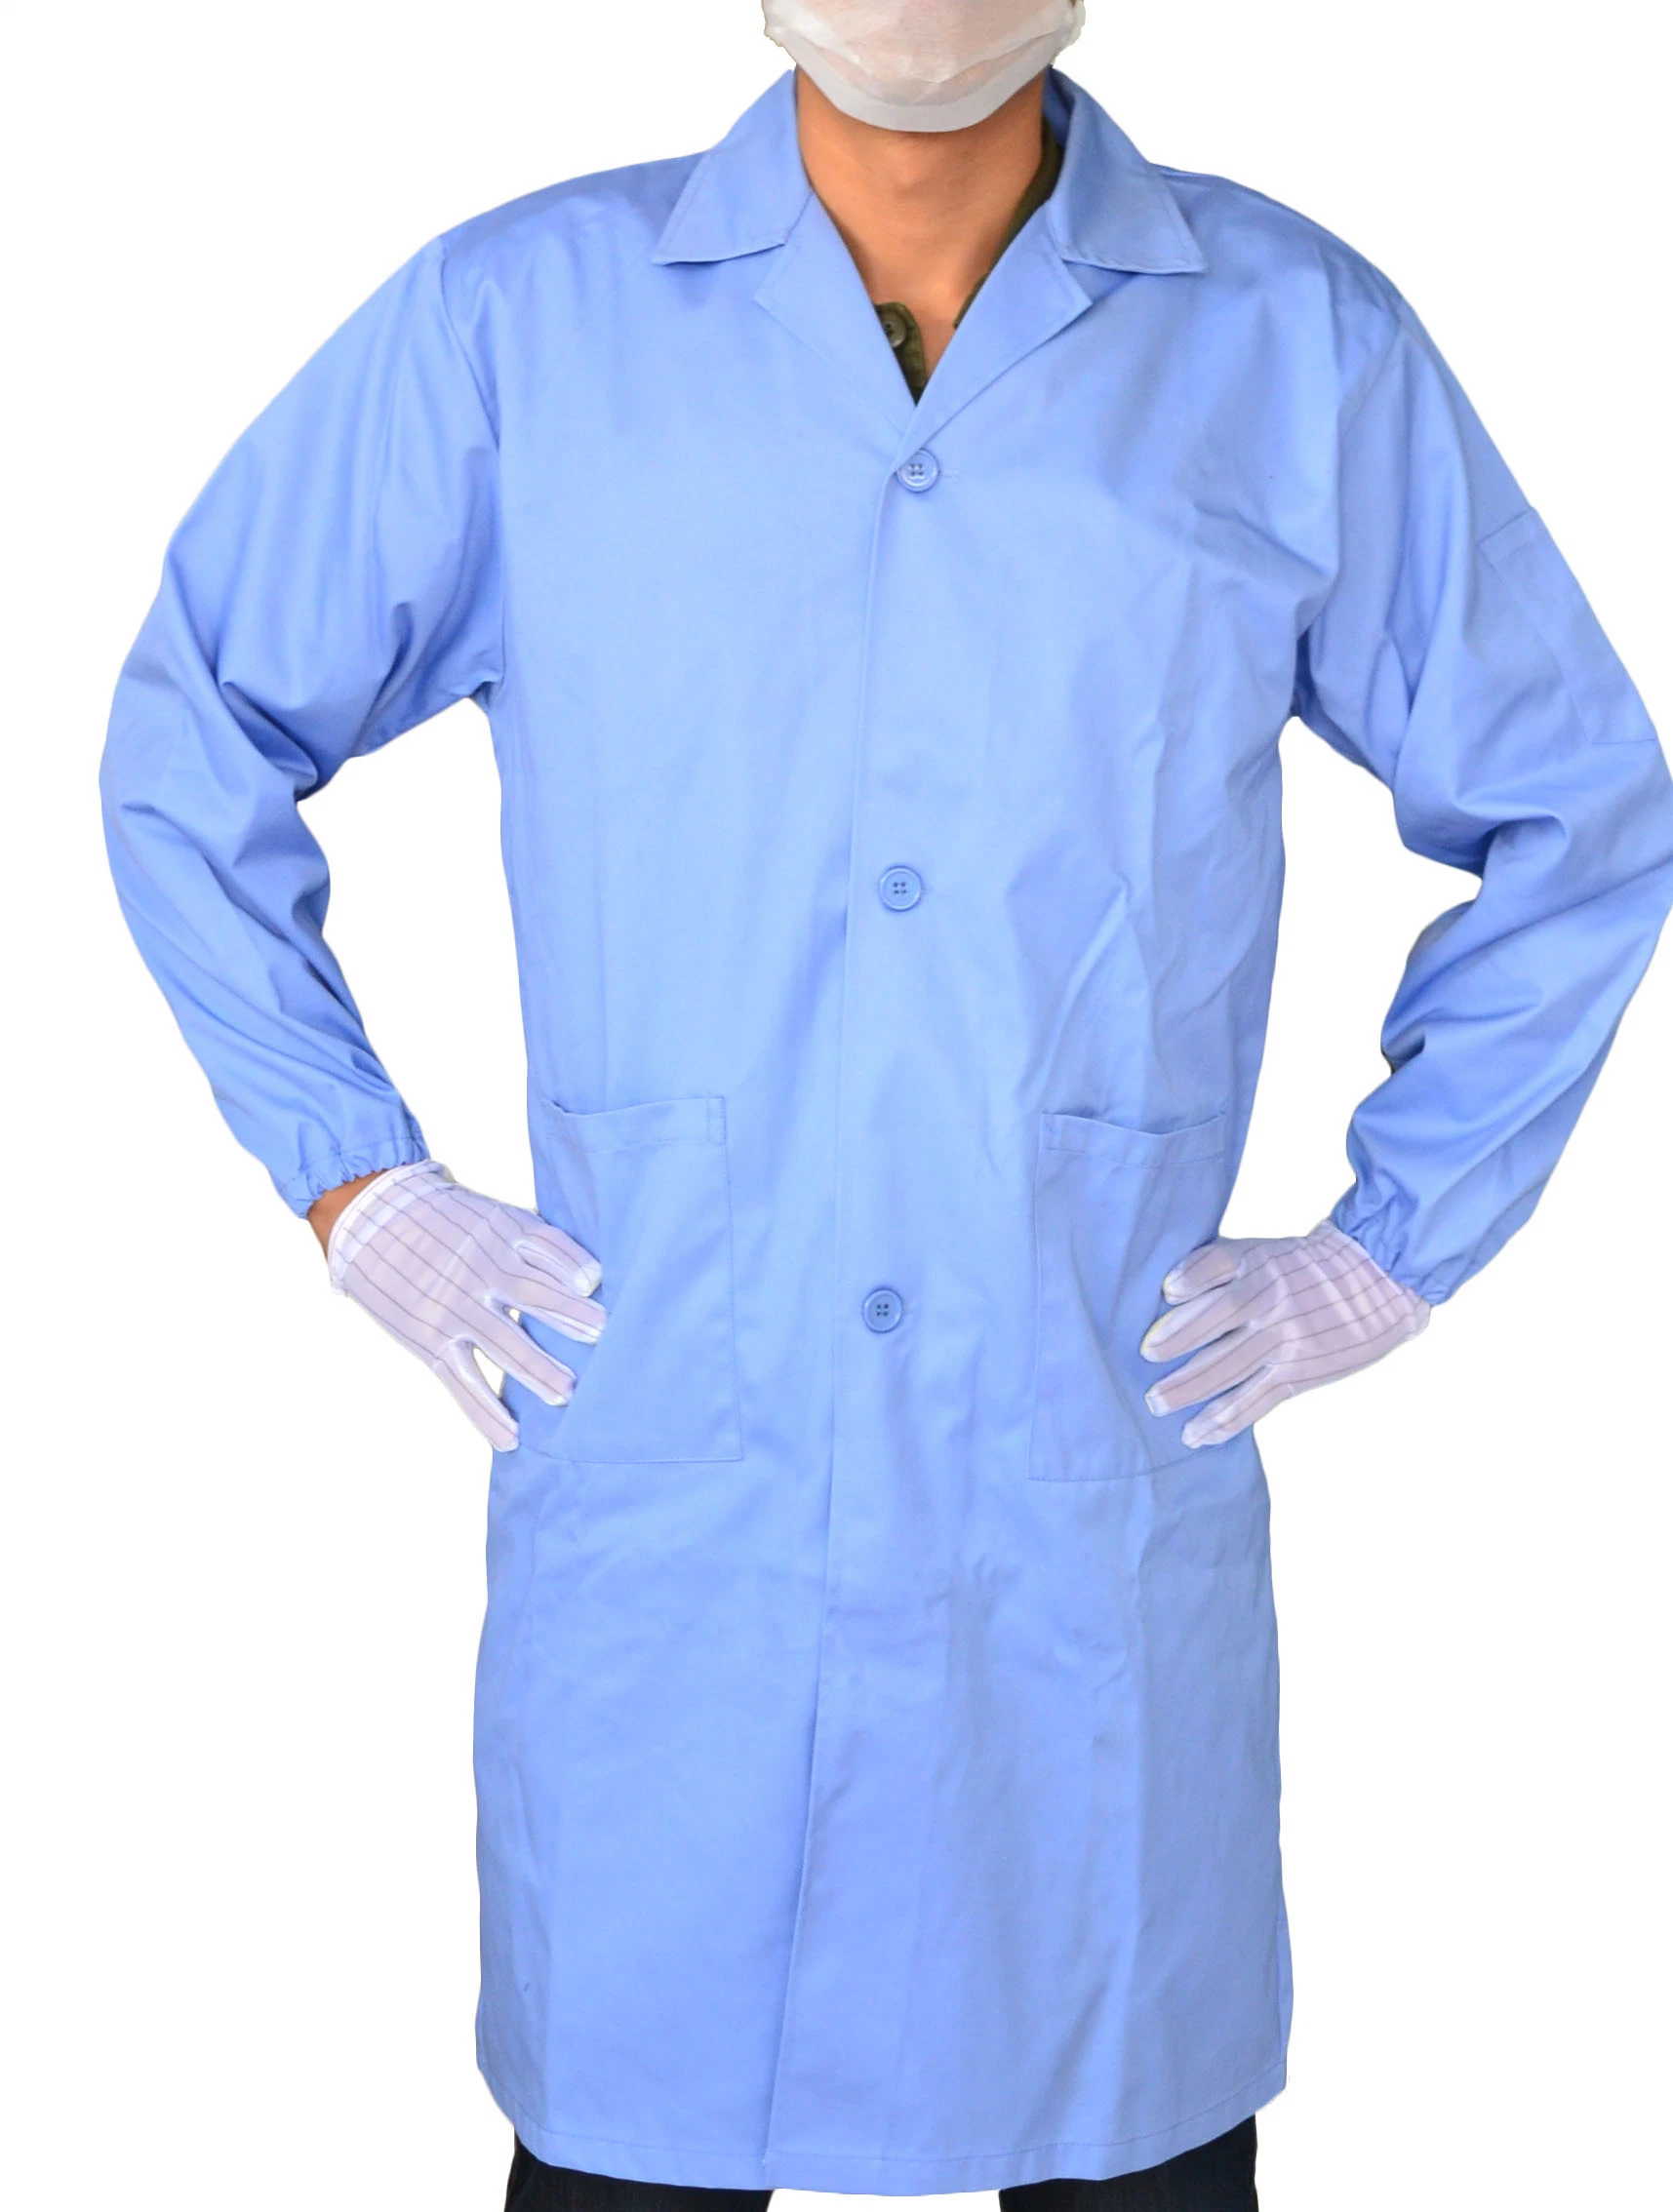 Antistatische/ESD-Overcoat-Overall-Bekleidung für Factory Lab